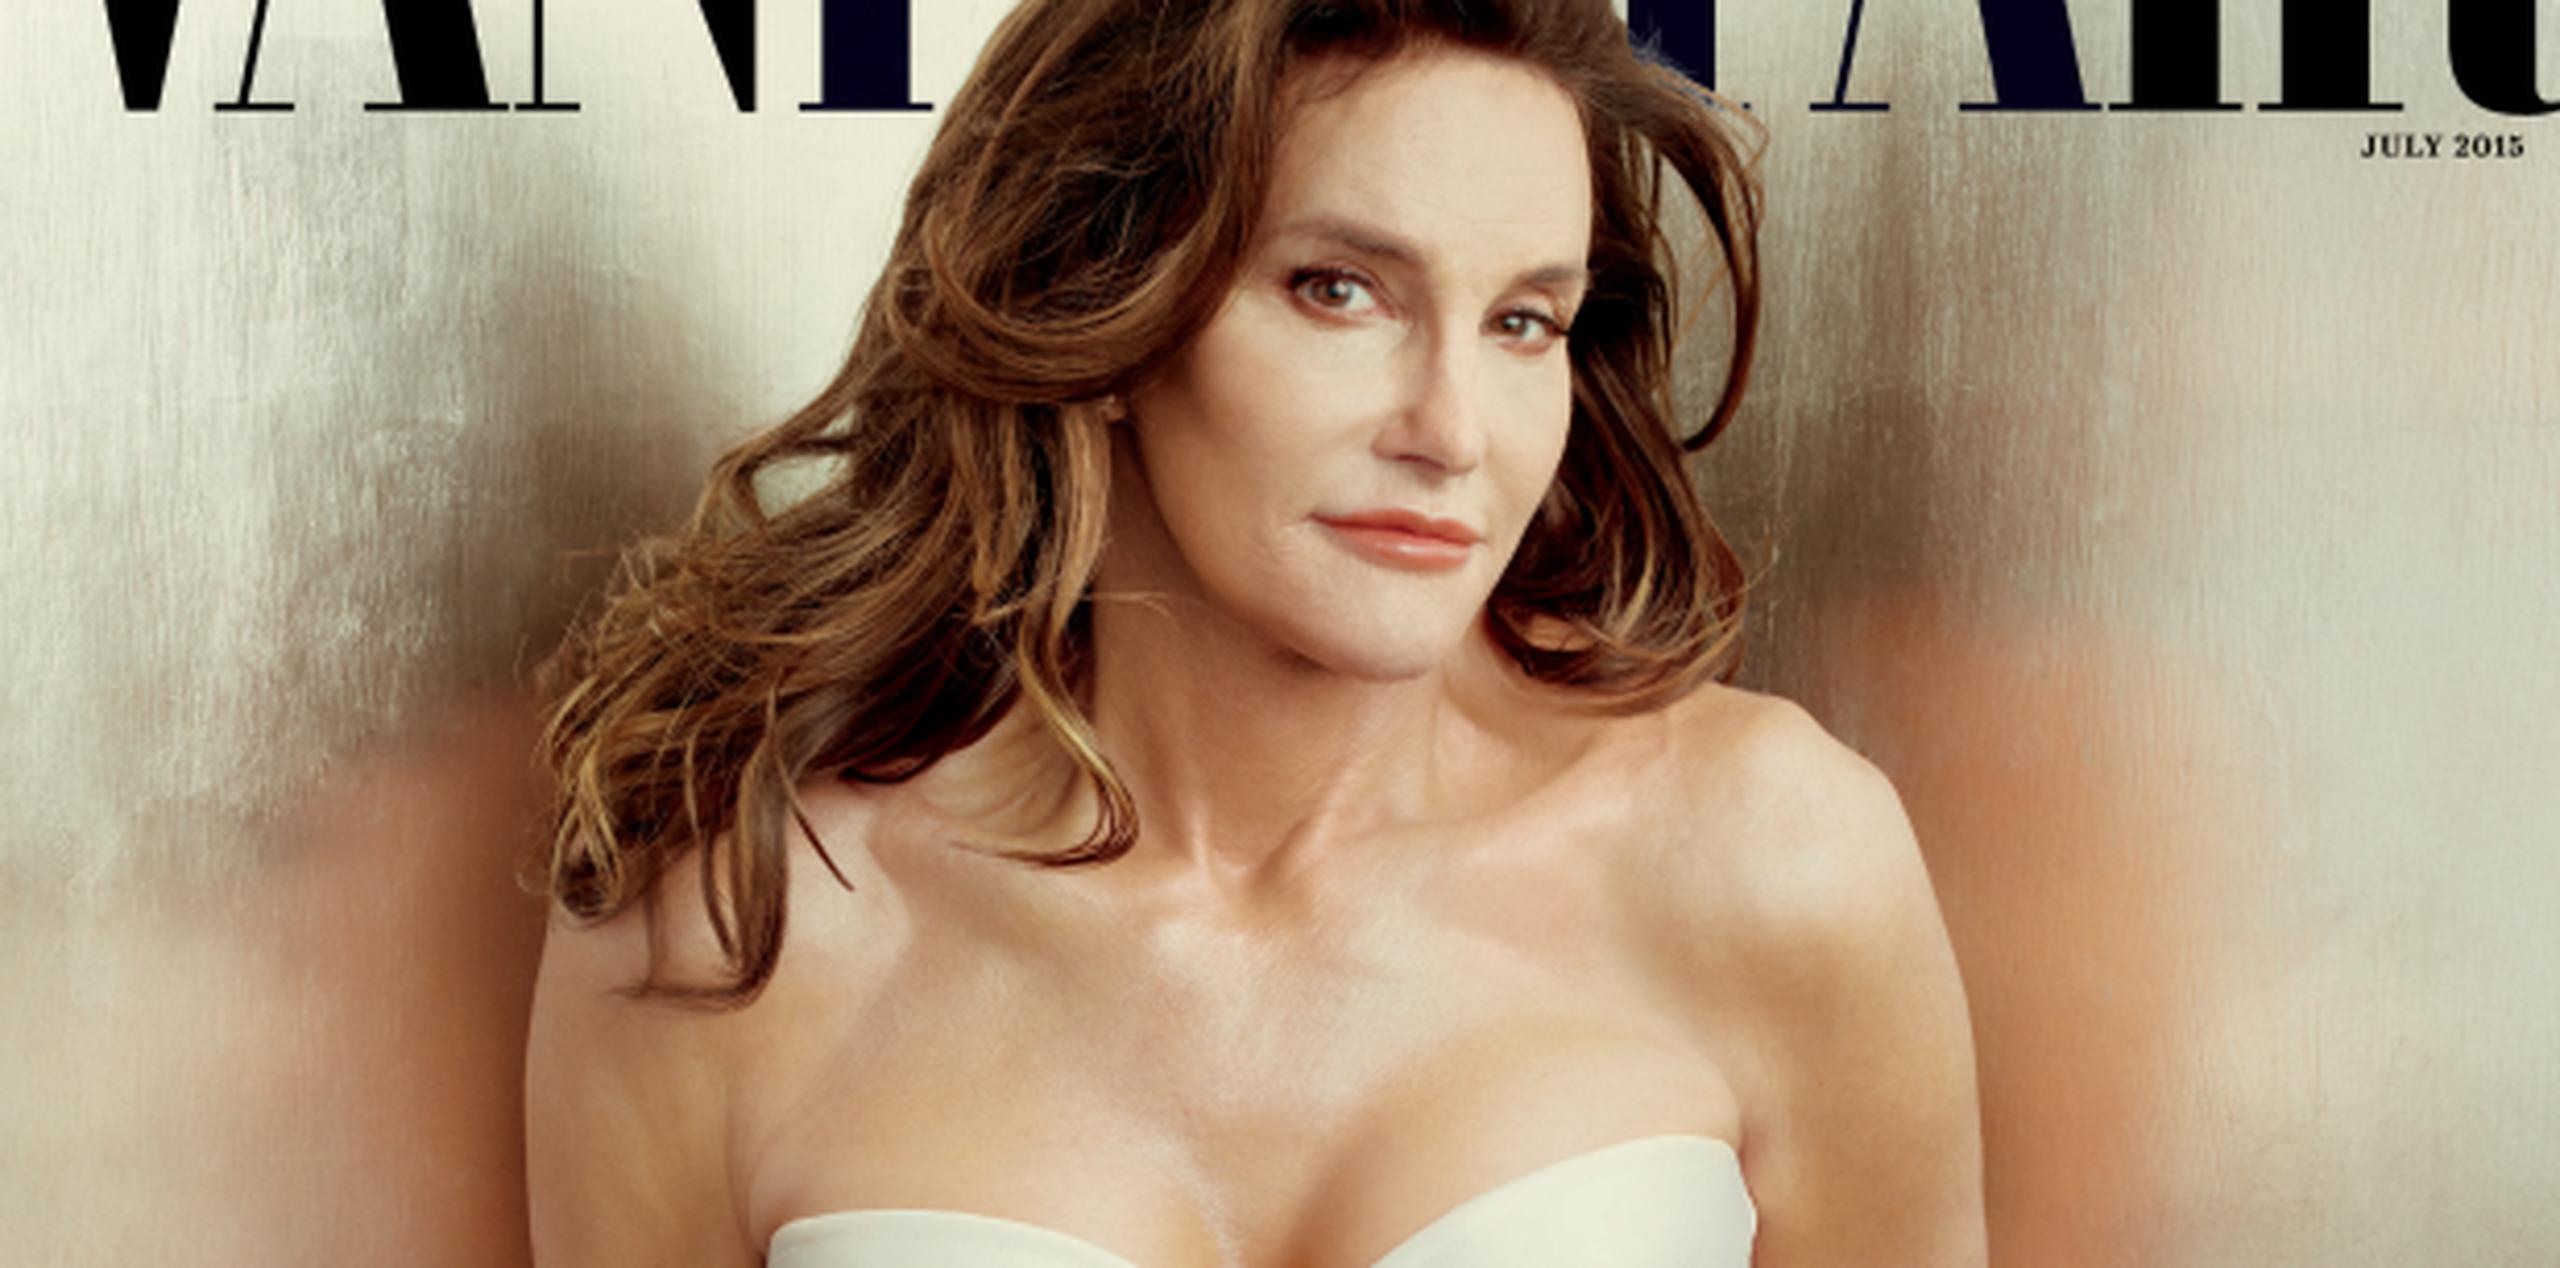 Jenner mostró por primera vez su nuevo aspecto como mujer al mundo en la portada de la revista Vanity Fair. (Archivo)